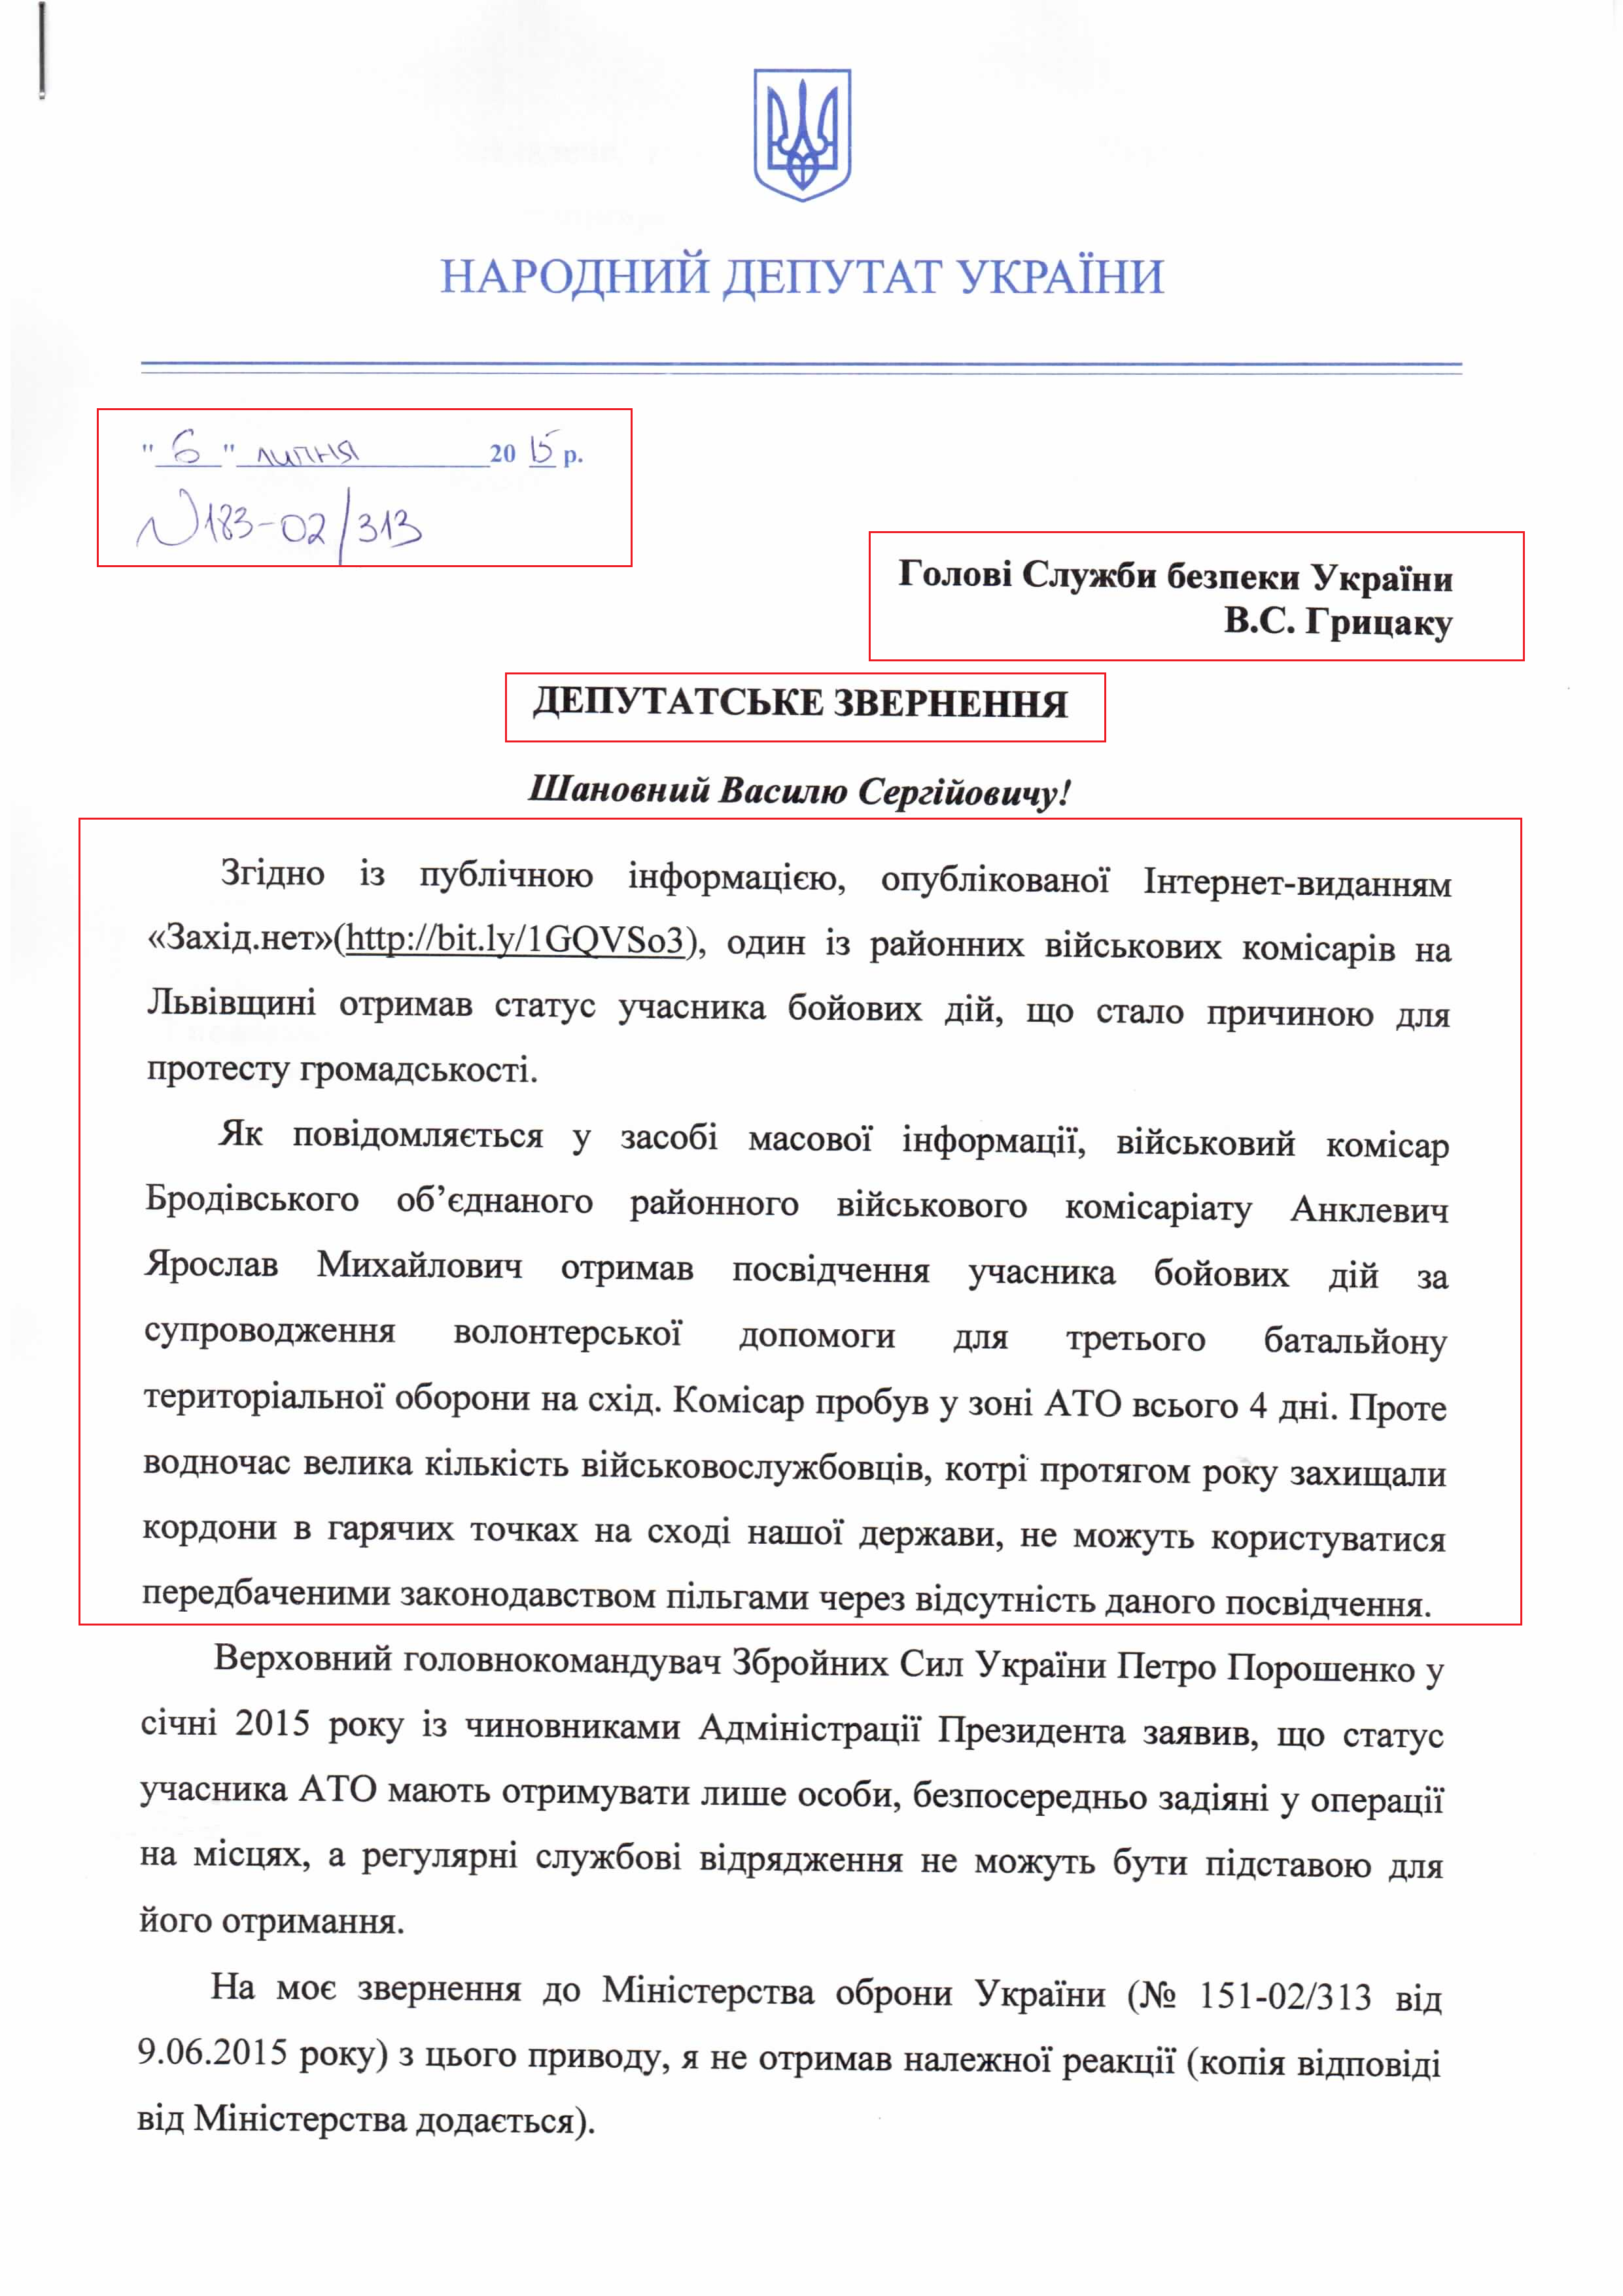 Звернення народного депутата України Дмитра Добродомова до Голови служби безпеки України